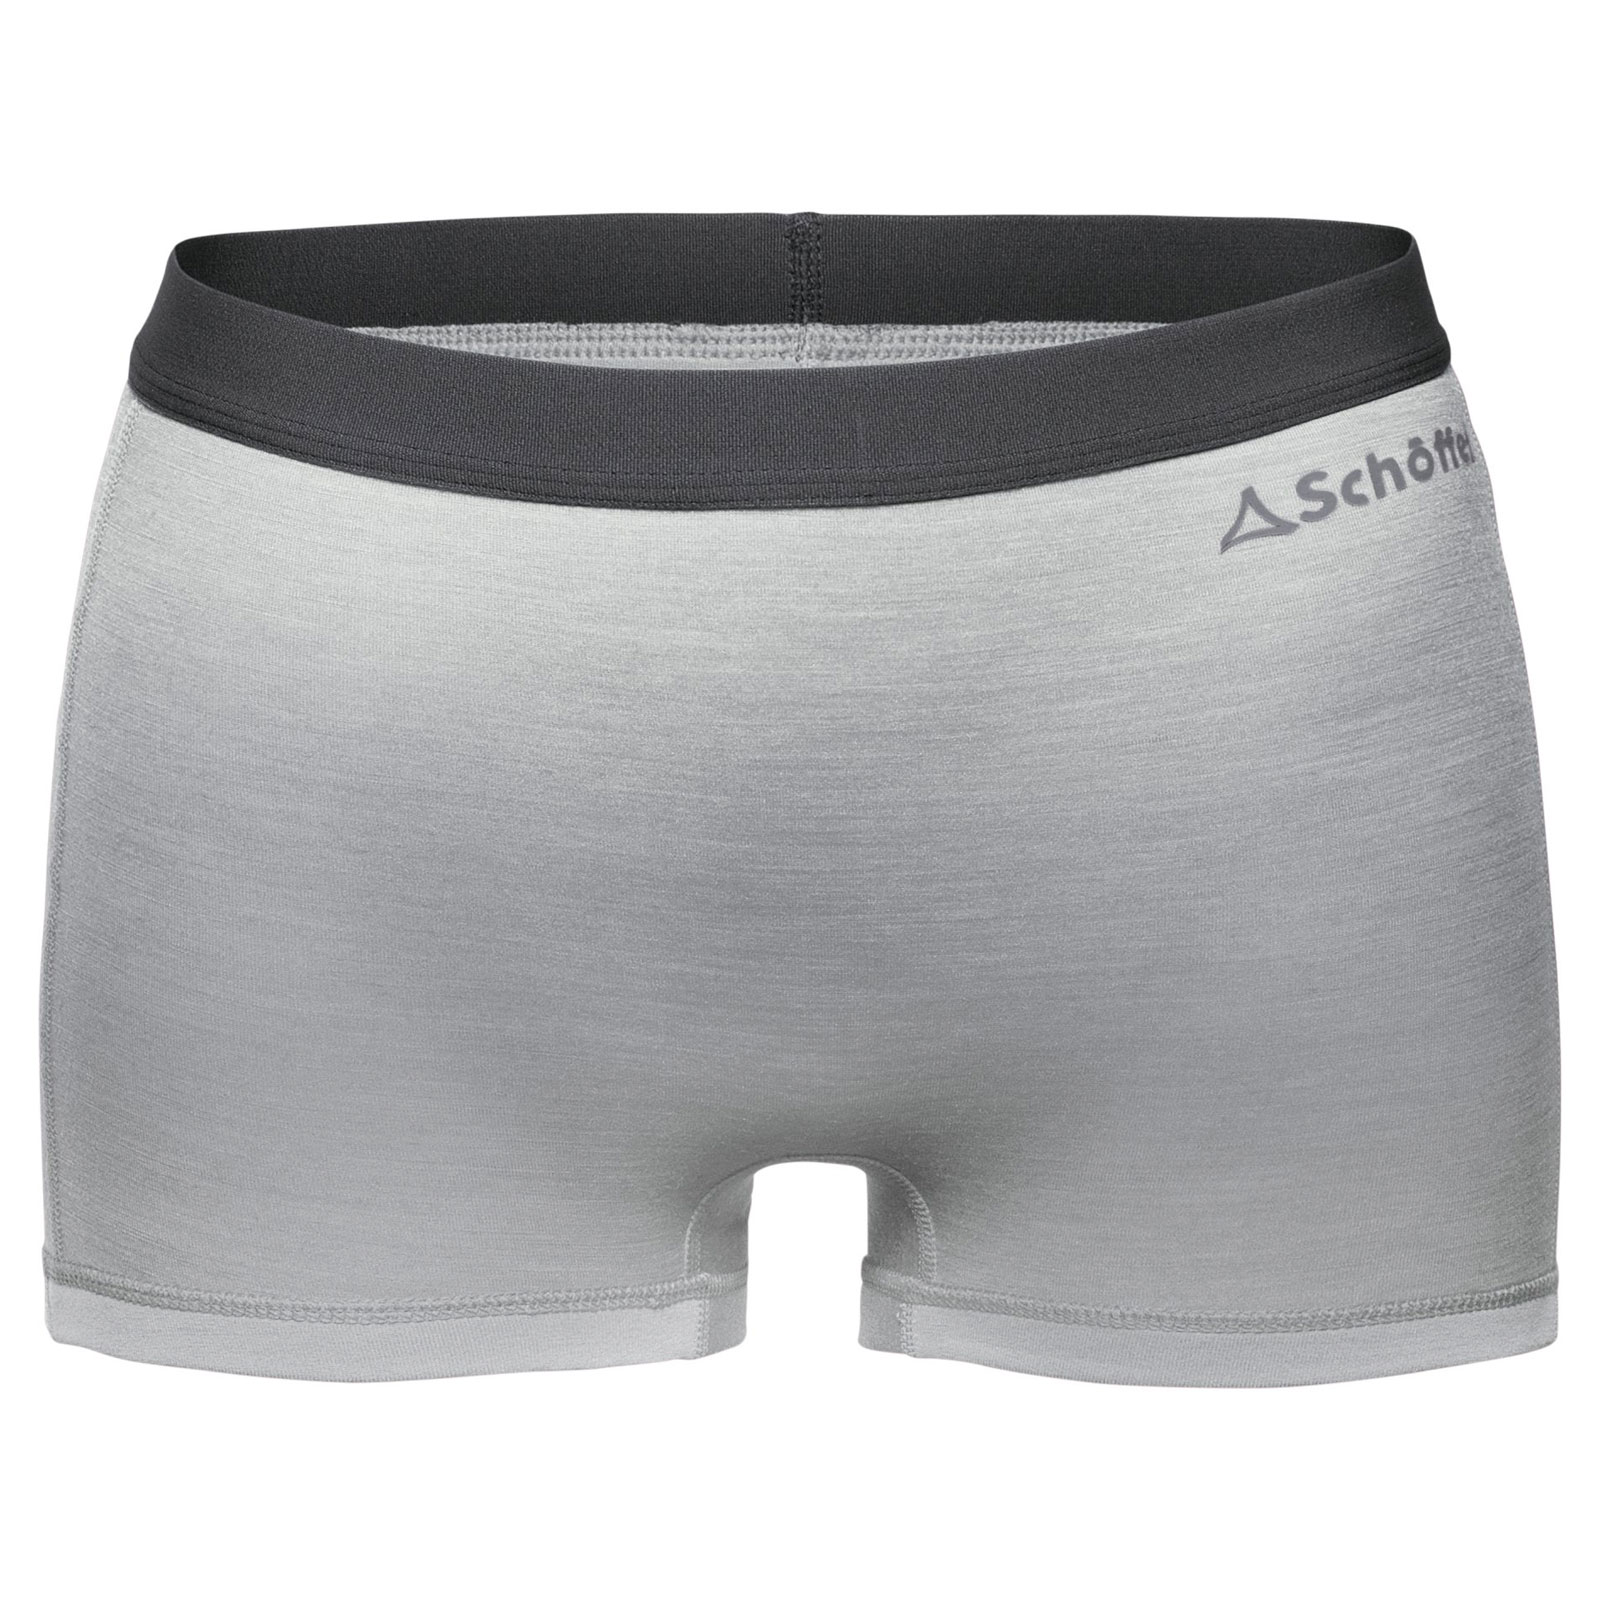 Produktbild von Schöffel Merino Sport Boxershorts Damen - opal gray 9645